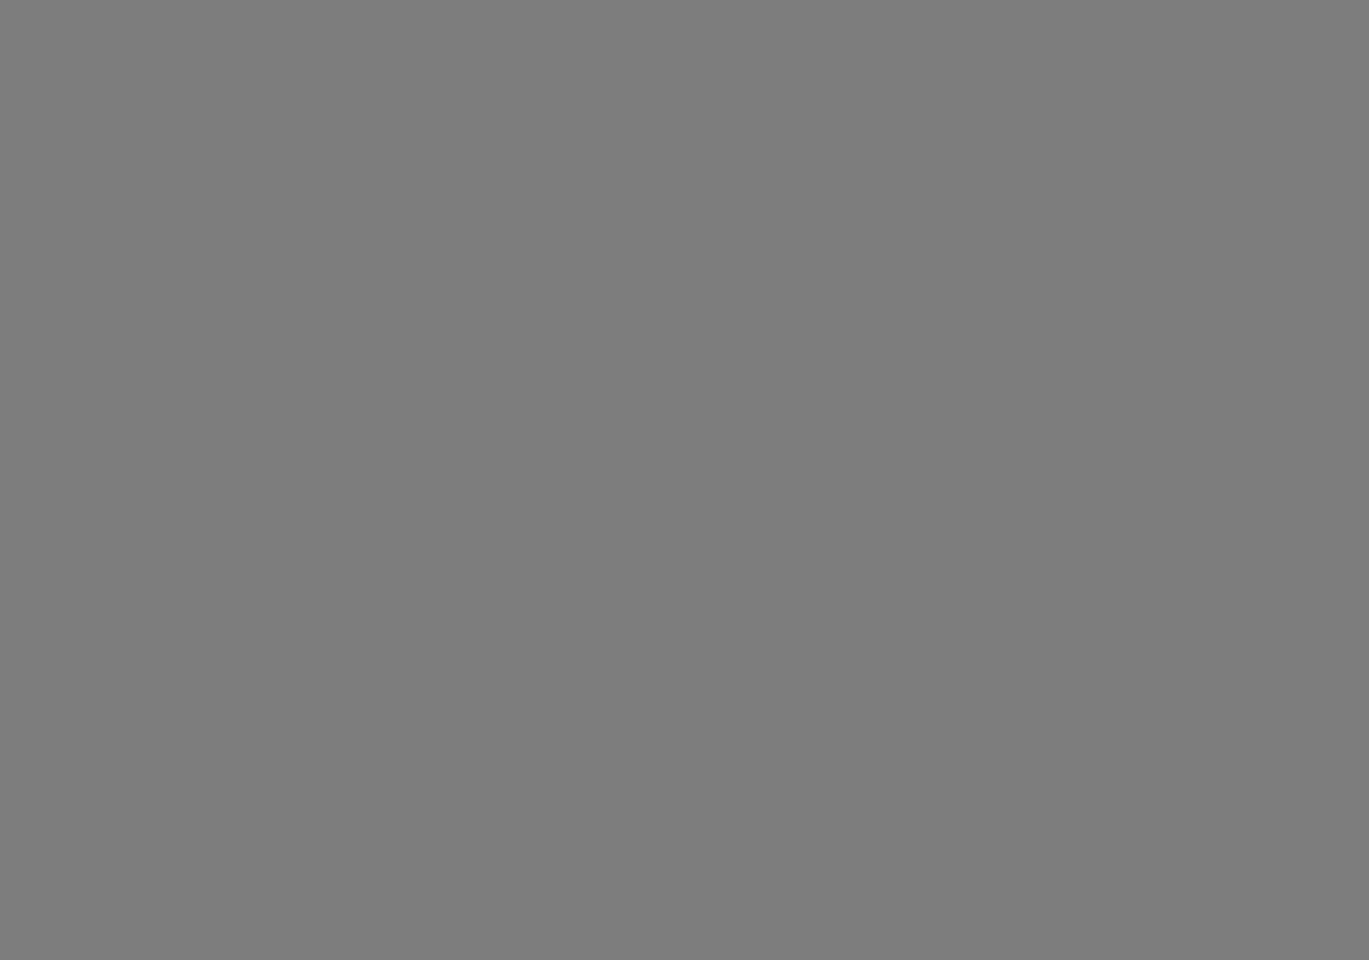 Александр Родченко. Лиля Брик в платке с принтом Варвары Степановой. 1924. Фотография: jewish-museum.ru